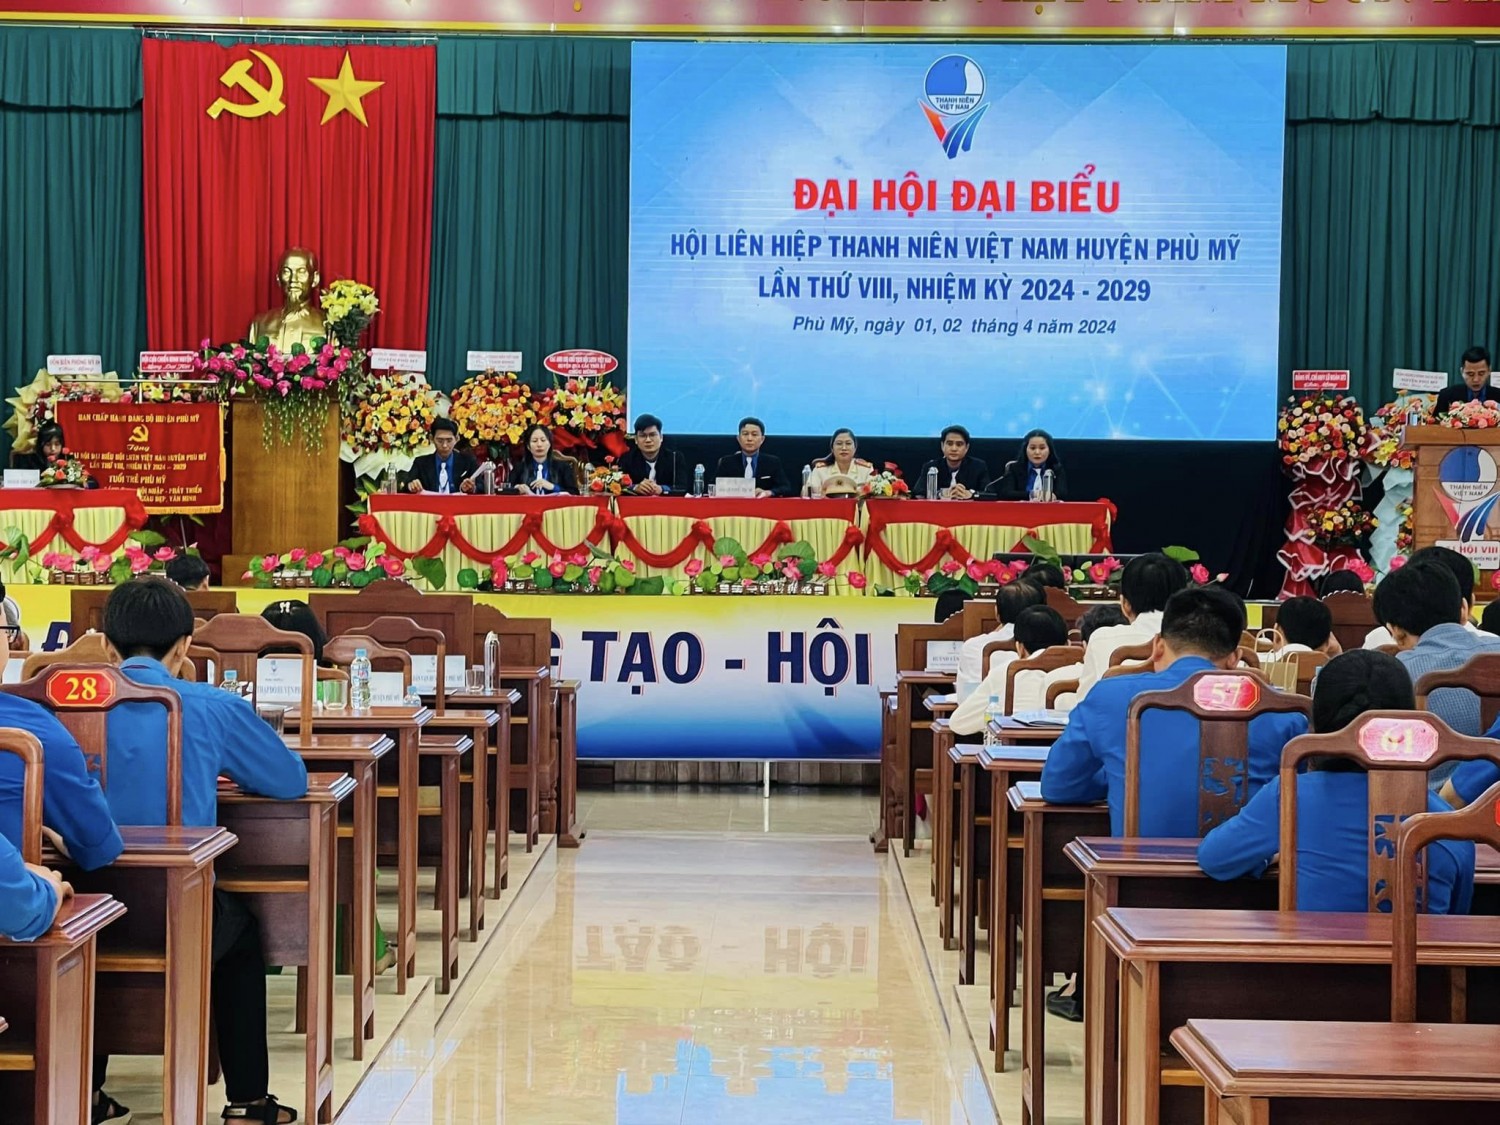 Phù Mỹ: Tổ chức Đại hội đại biểu Hội LHTN Việt Nam huyện Phù Mỹ nhiệm kỳ 2024 – 2029